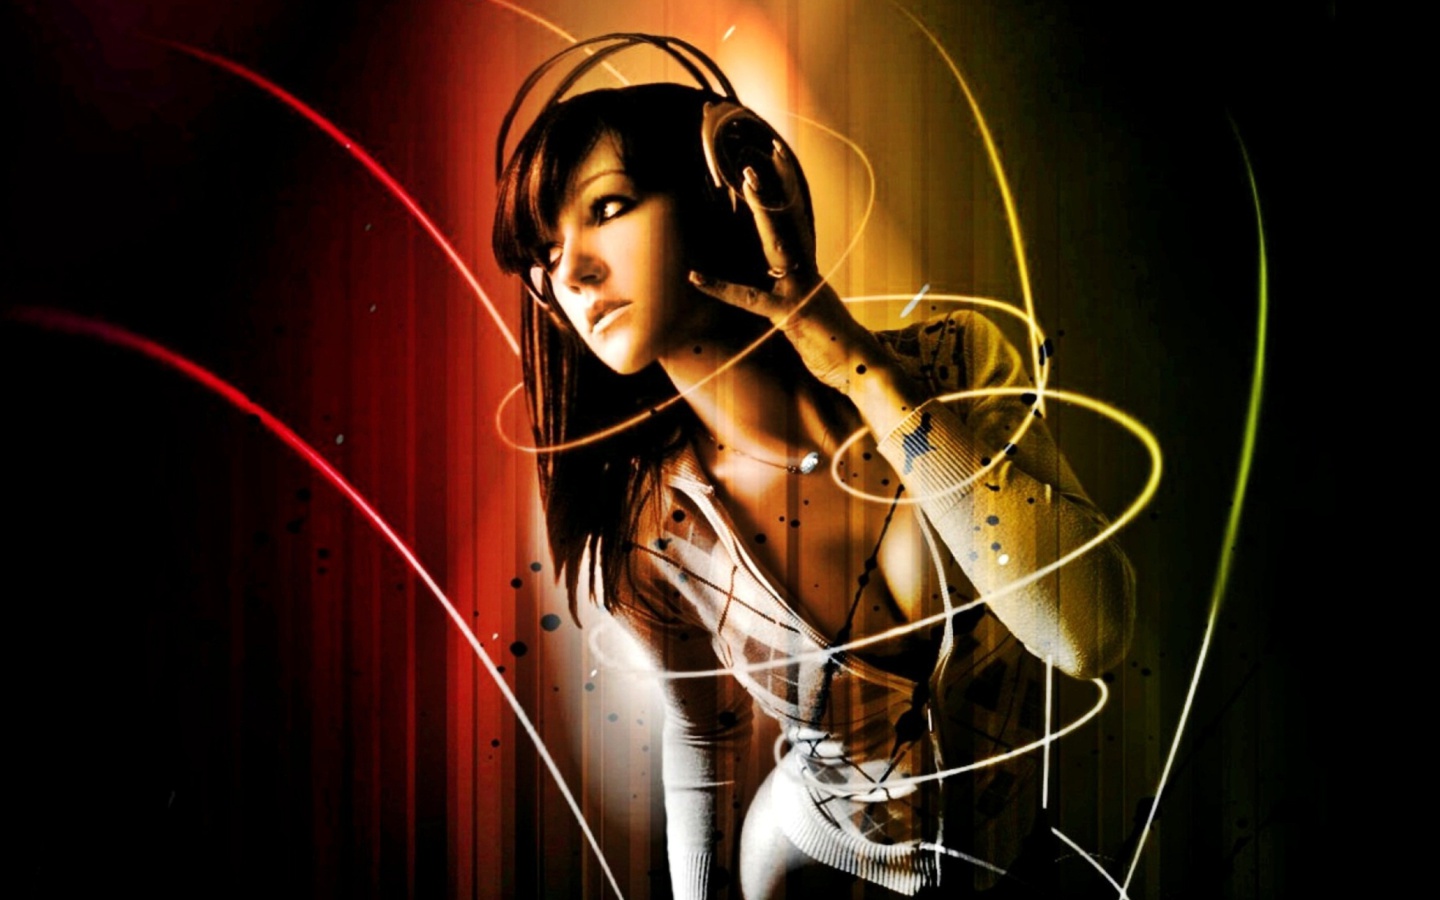 Das Music Girl Wallpaper 1440x900